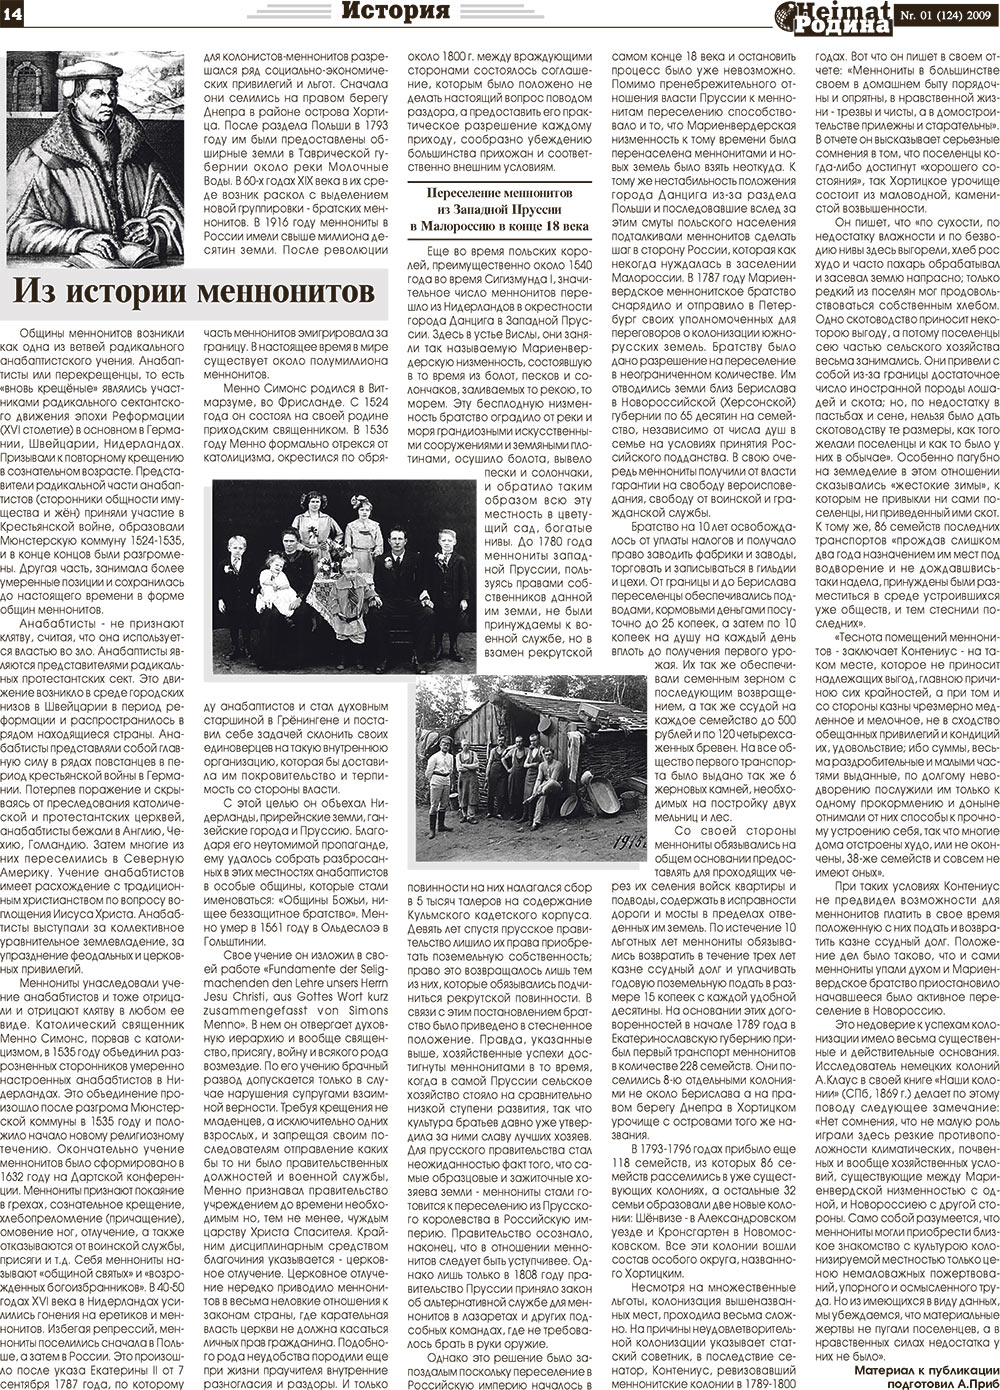 Heimat-Родина (газета). 2009 год, номер 1, стр. 14